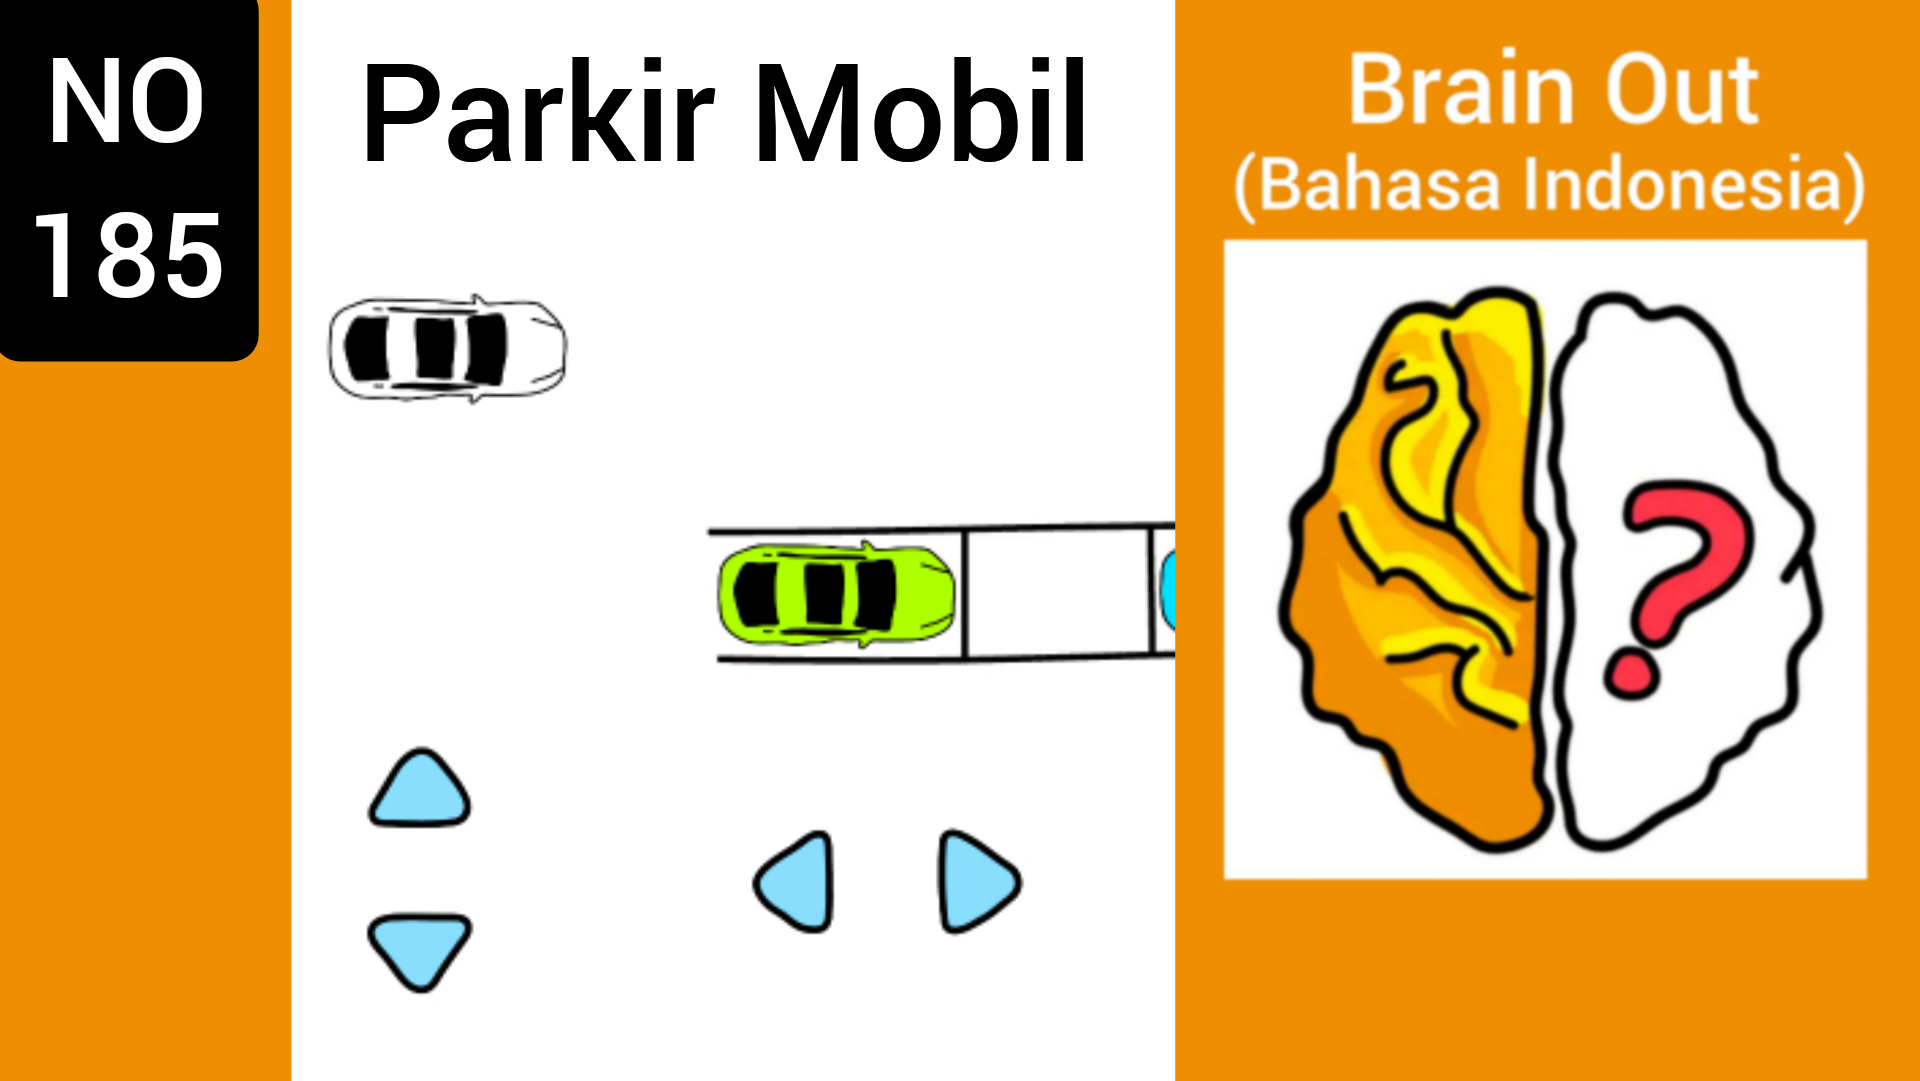 Припаркуйте машину Brain out.